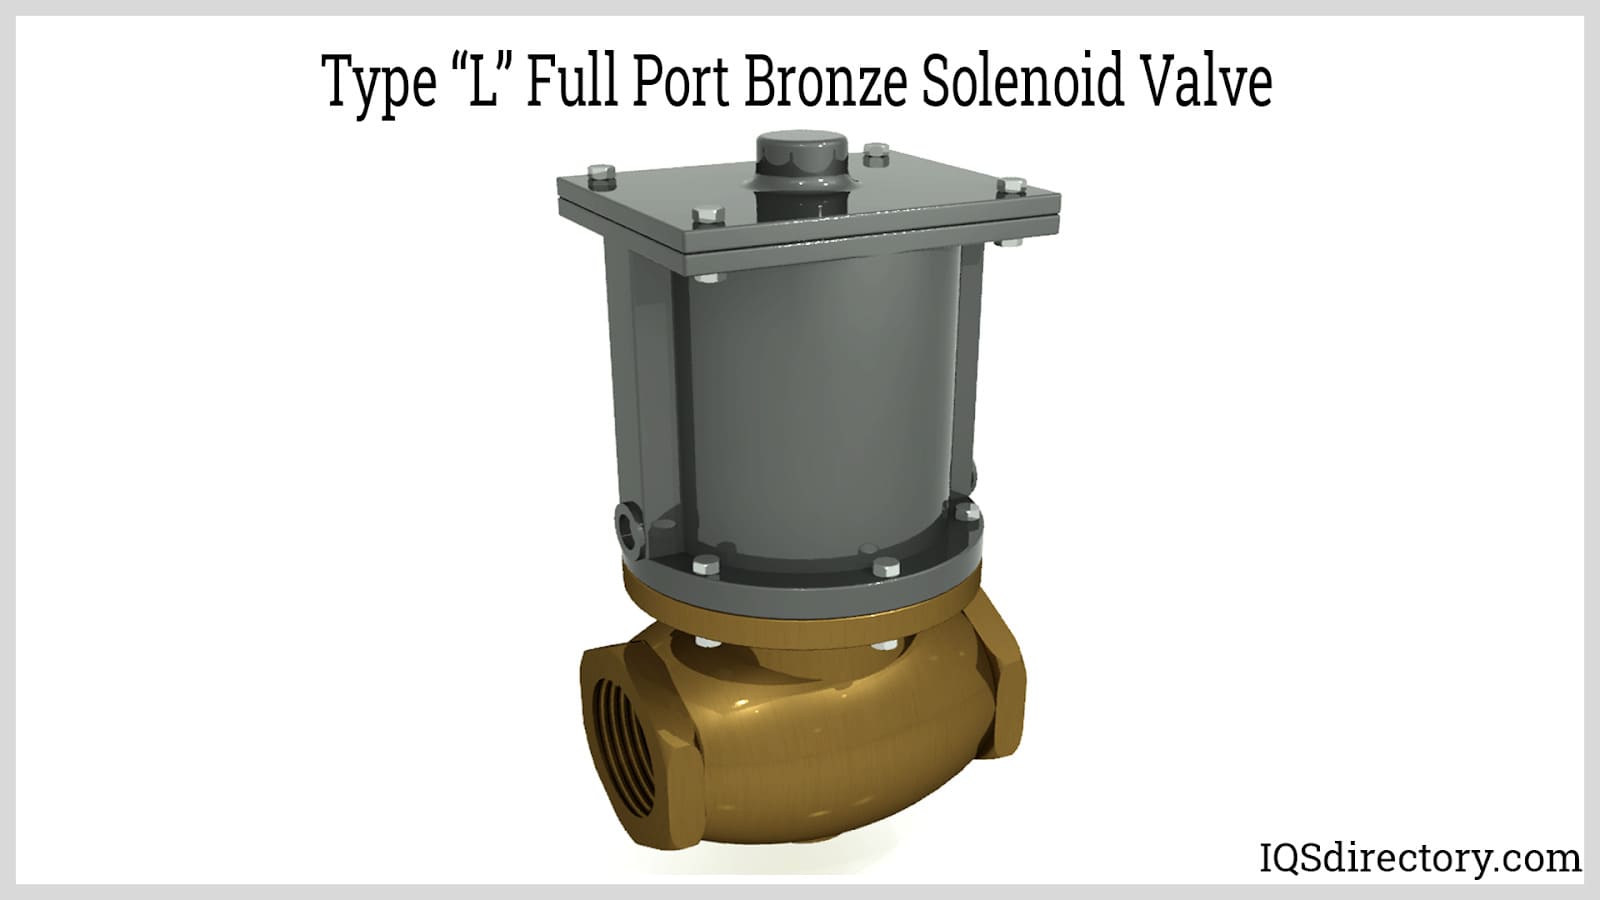 Type "L" Full Port Bronze Solenoid Valve